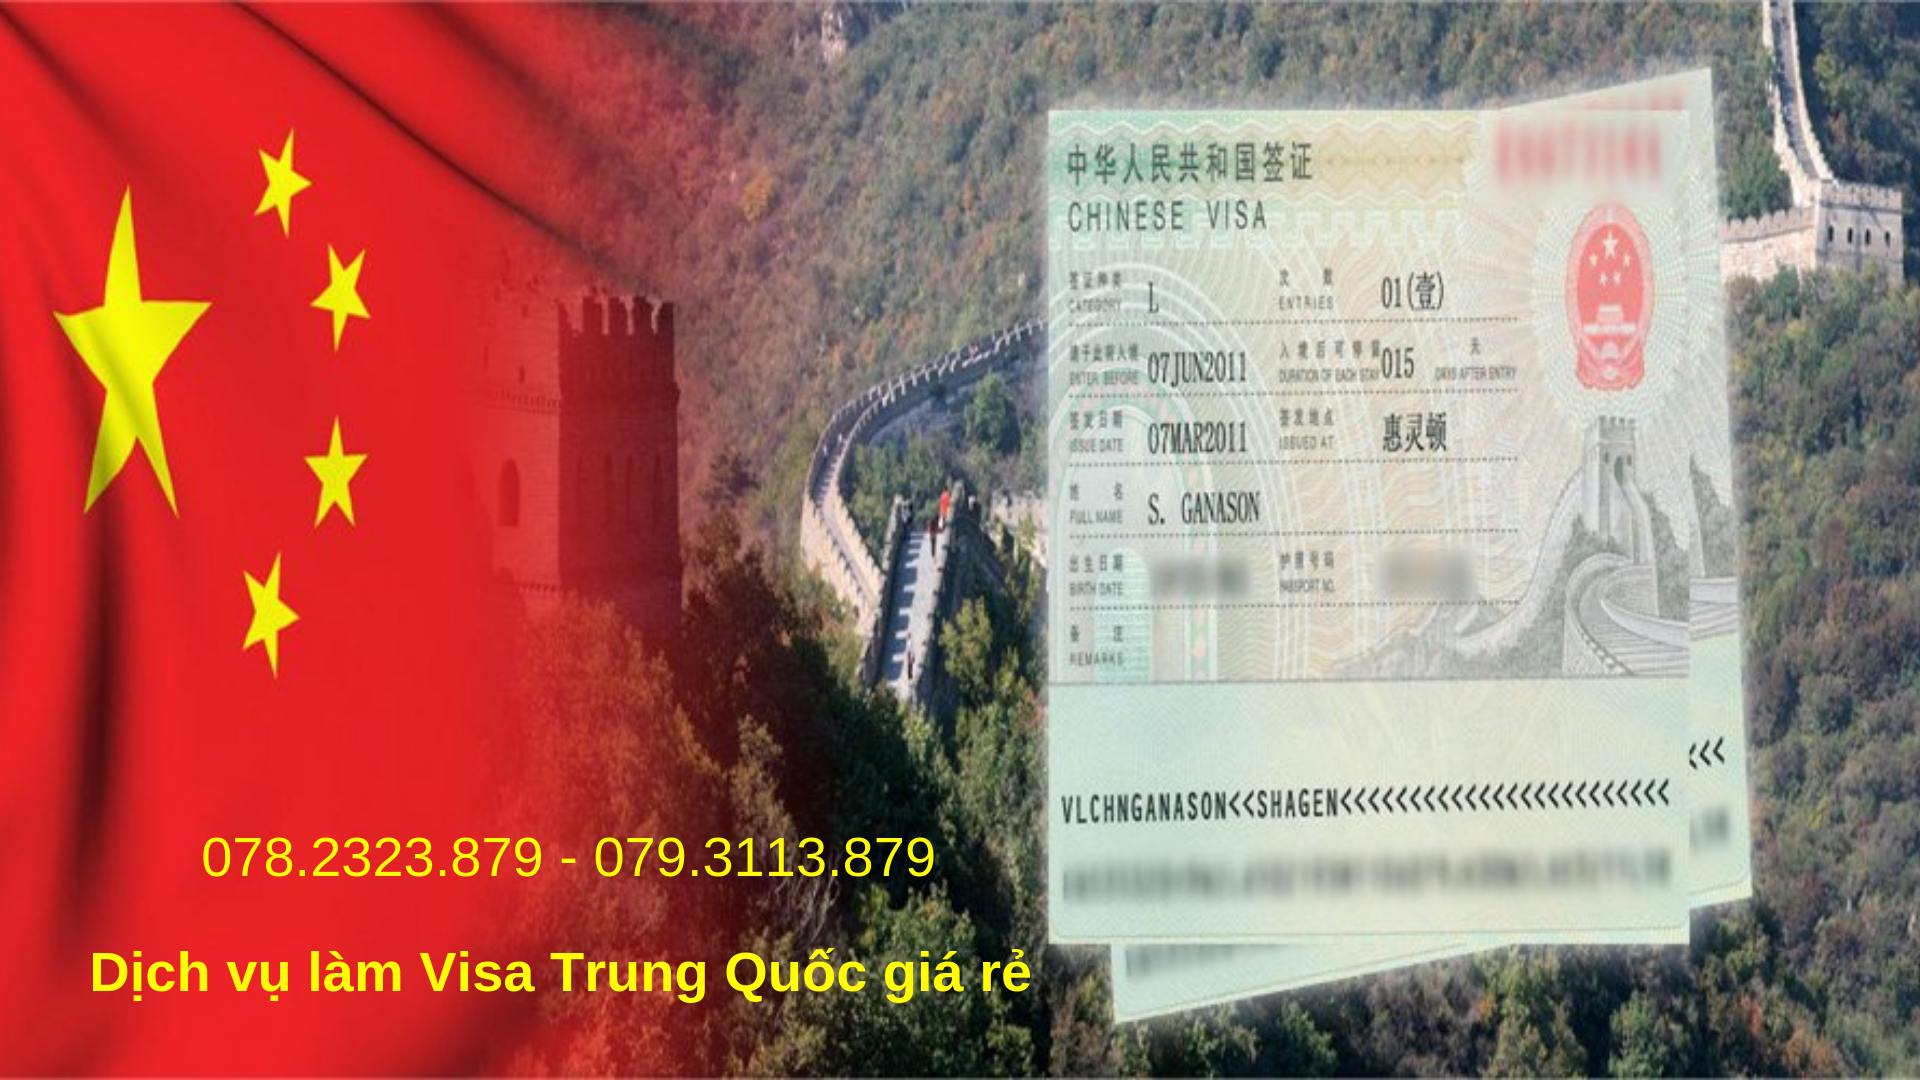 Dịch vụ làm visa Trung Quốc nhanh, gọn, giá rẻ